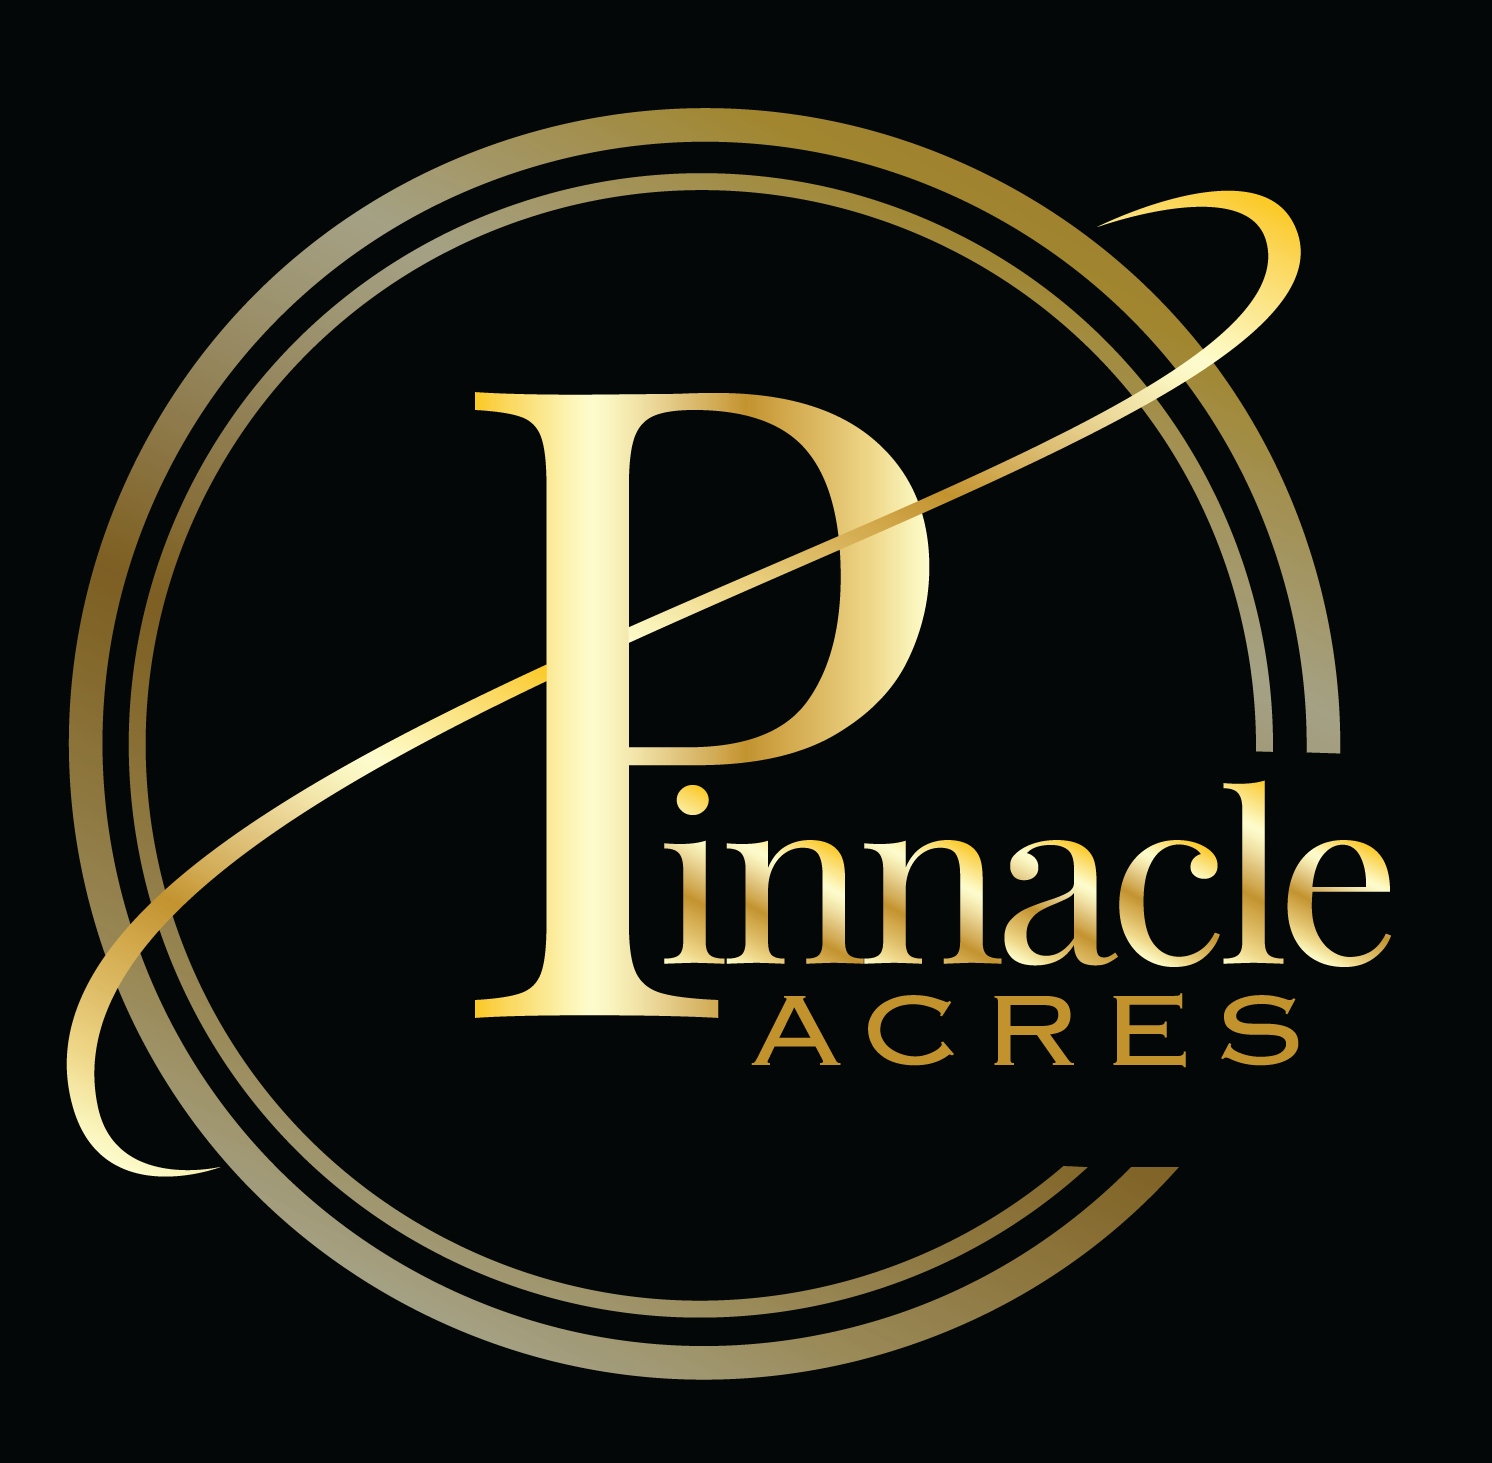 Pinnacle Acres